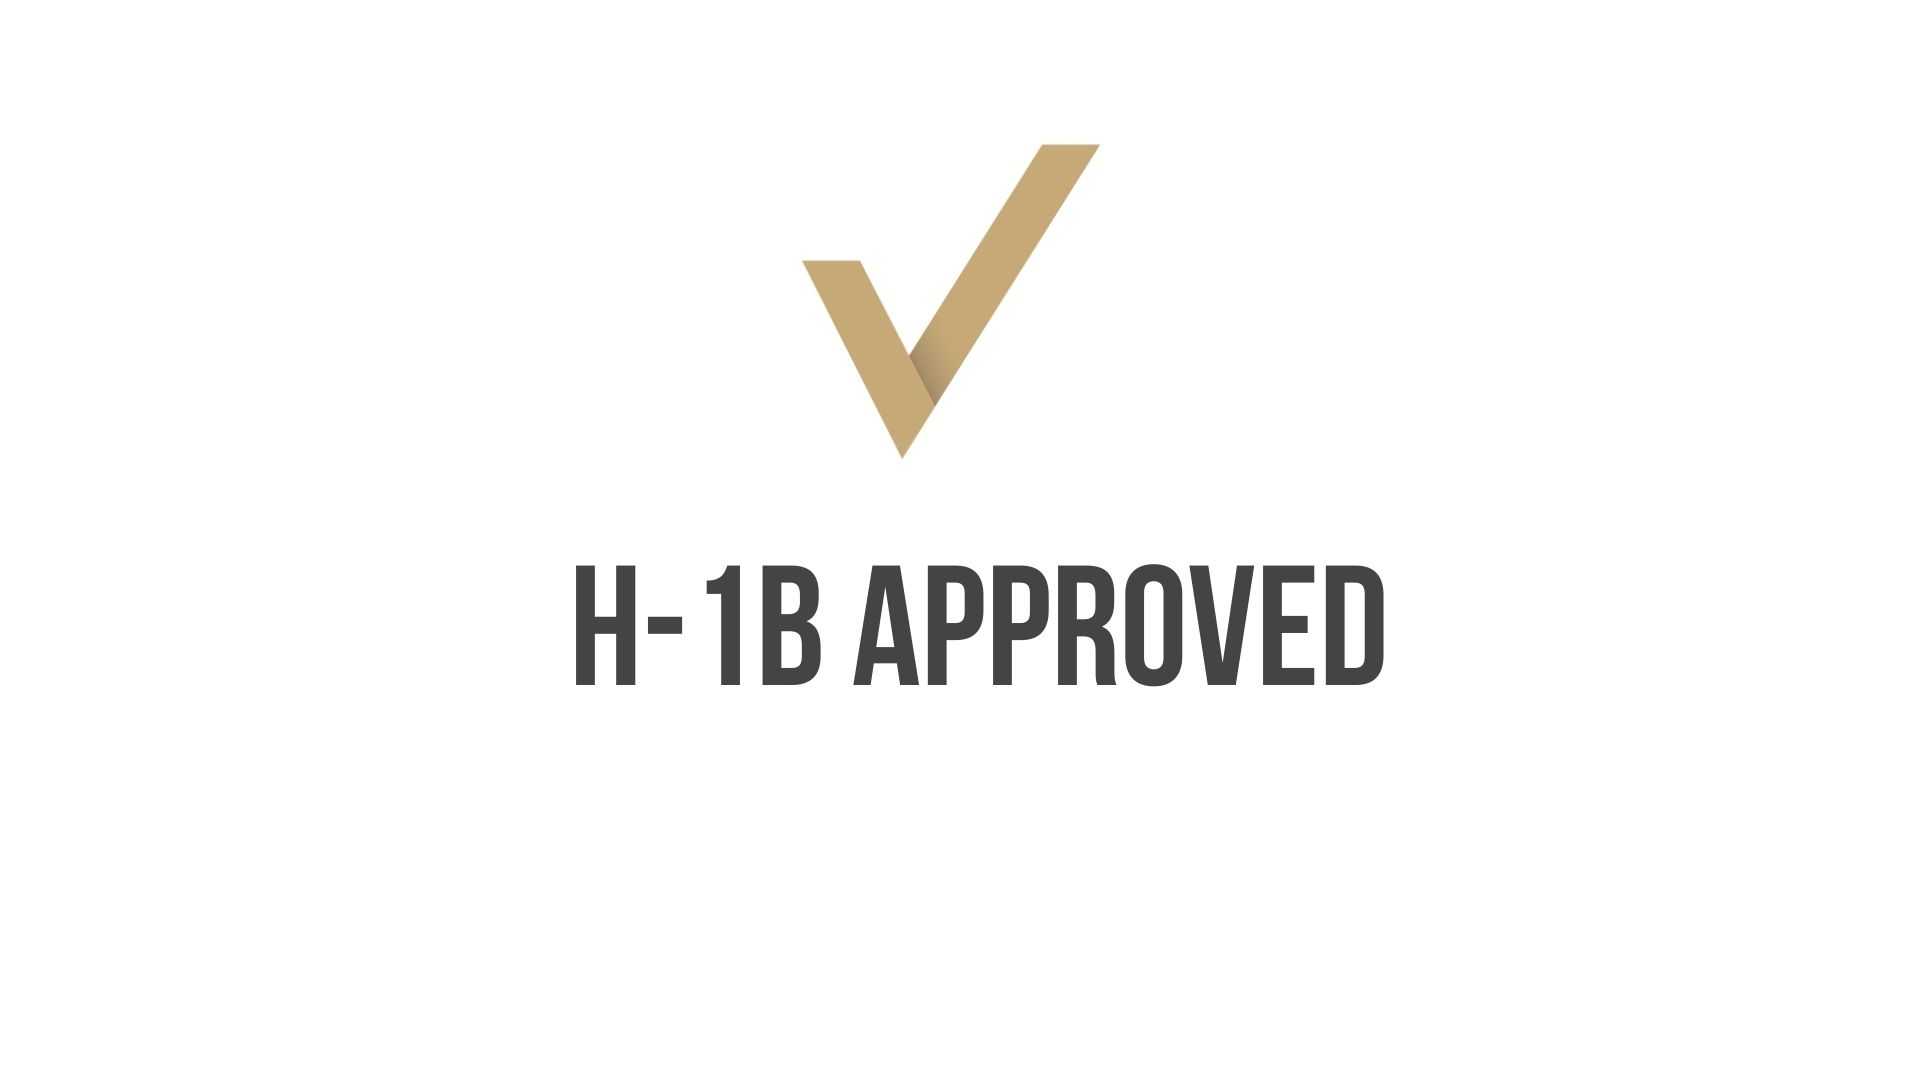 H-1B Approval for Elementary School Teacher